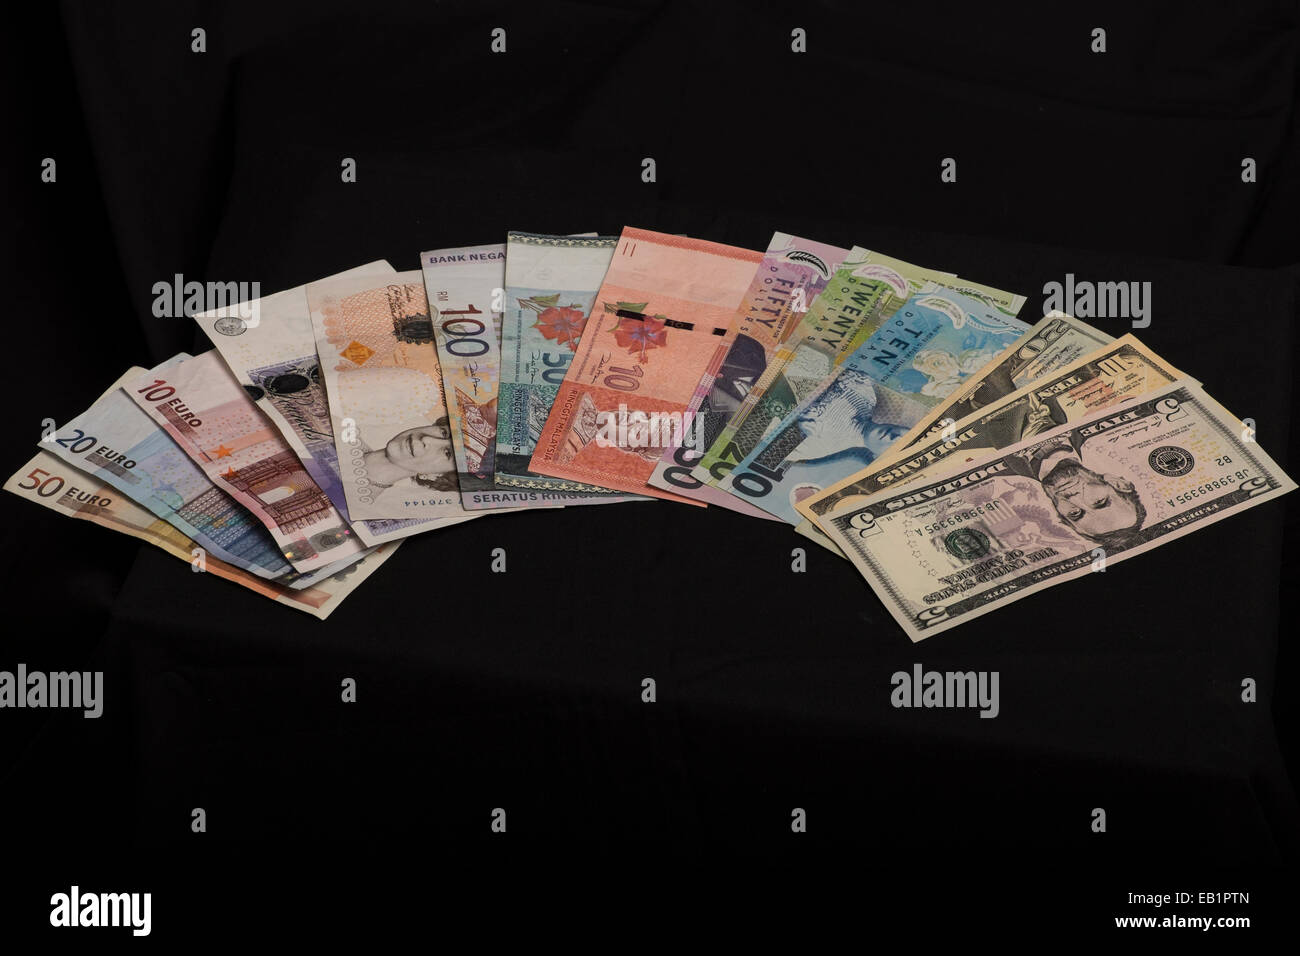 Geldscheine, NZ Dollar, malaysische Ringitts, britische Pfund, US Dollar, Euro, Stockfoto